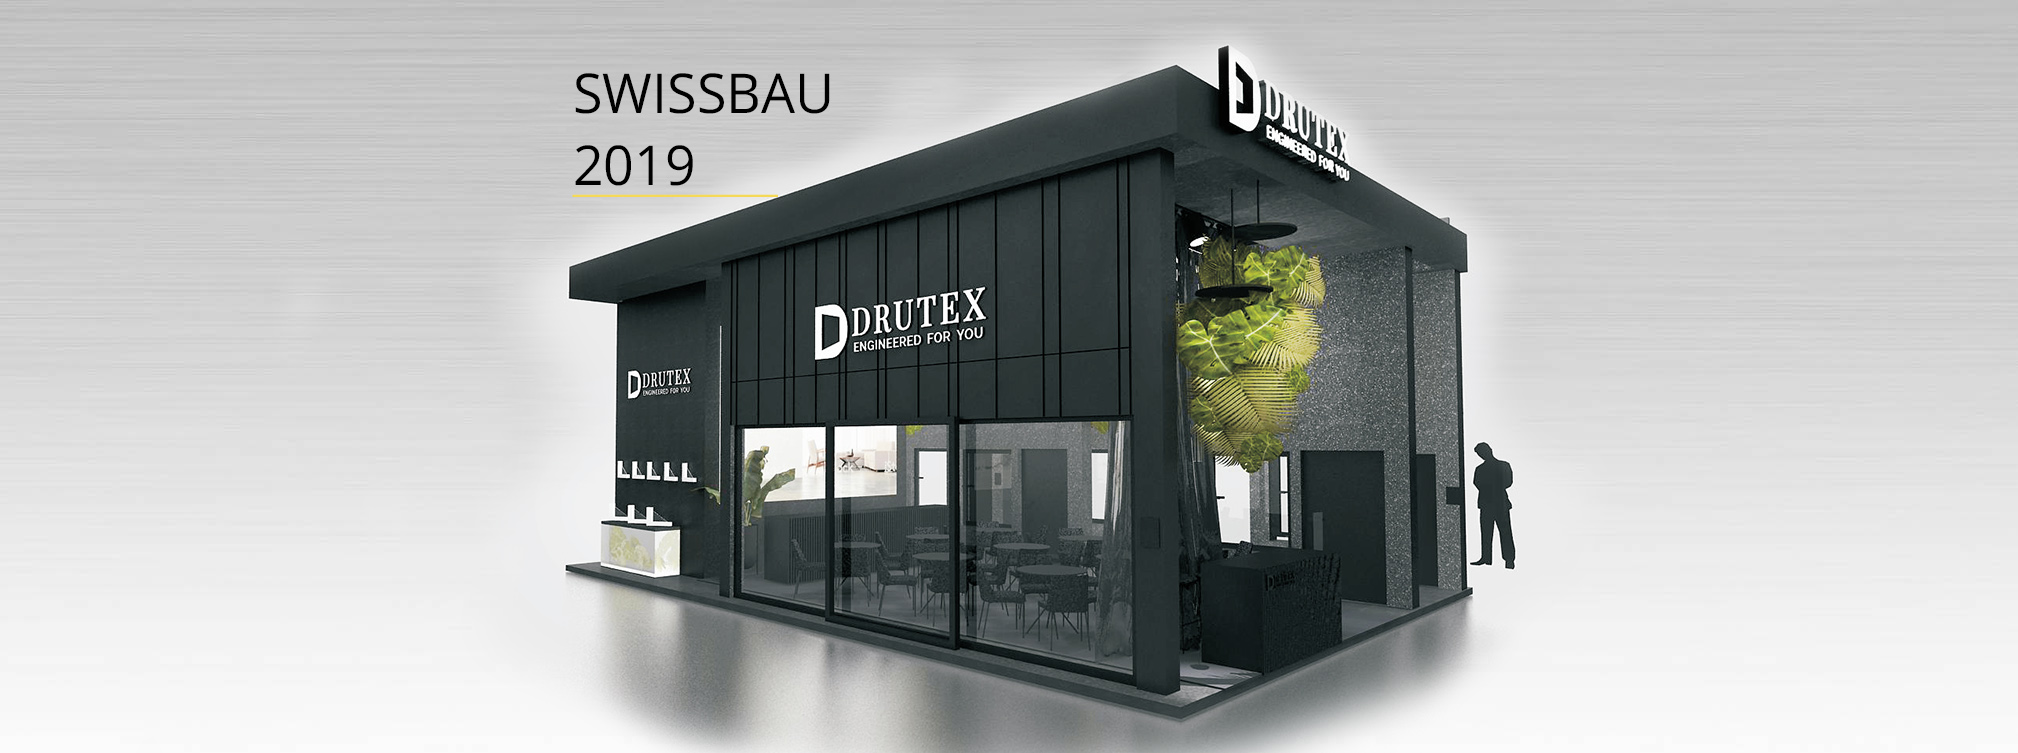 Drutex’ debut at the SWISSBAU trade fair